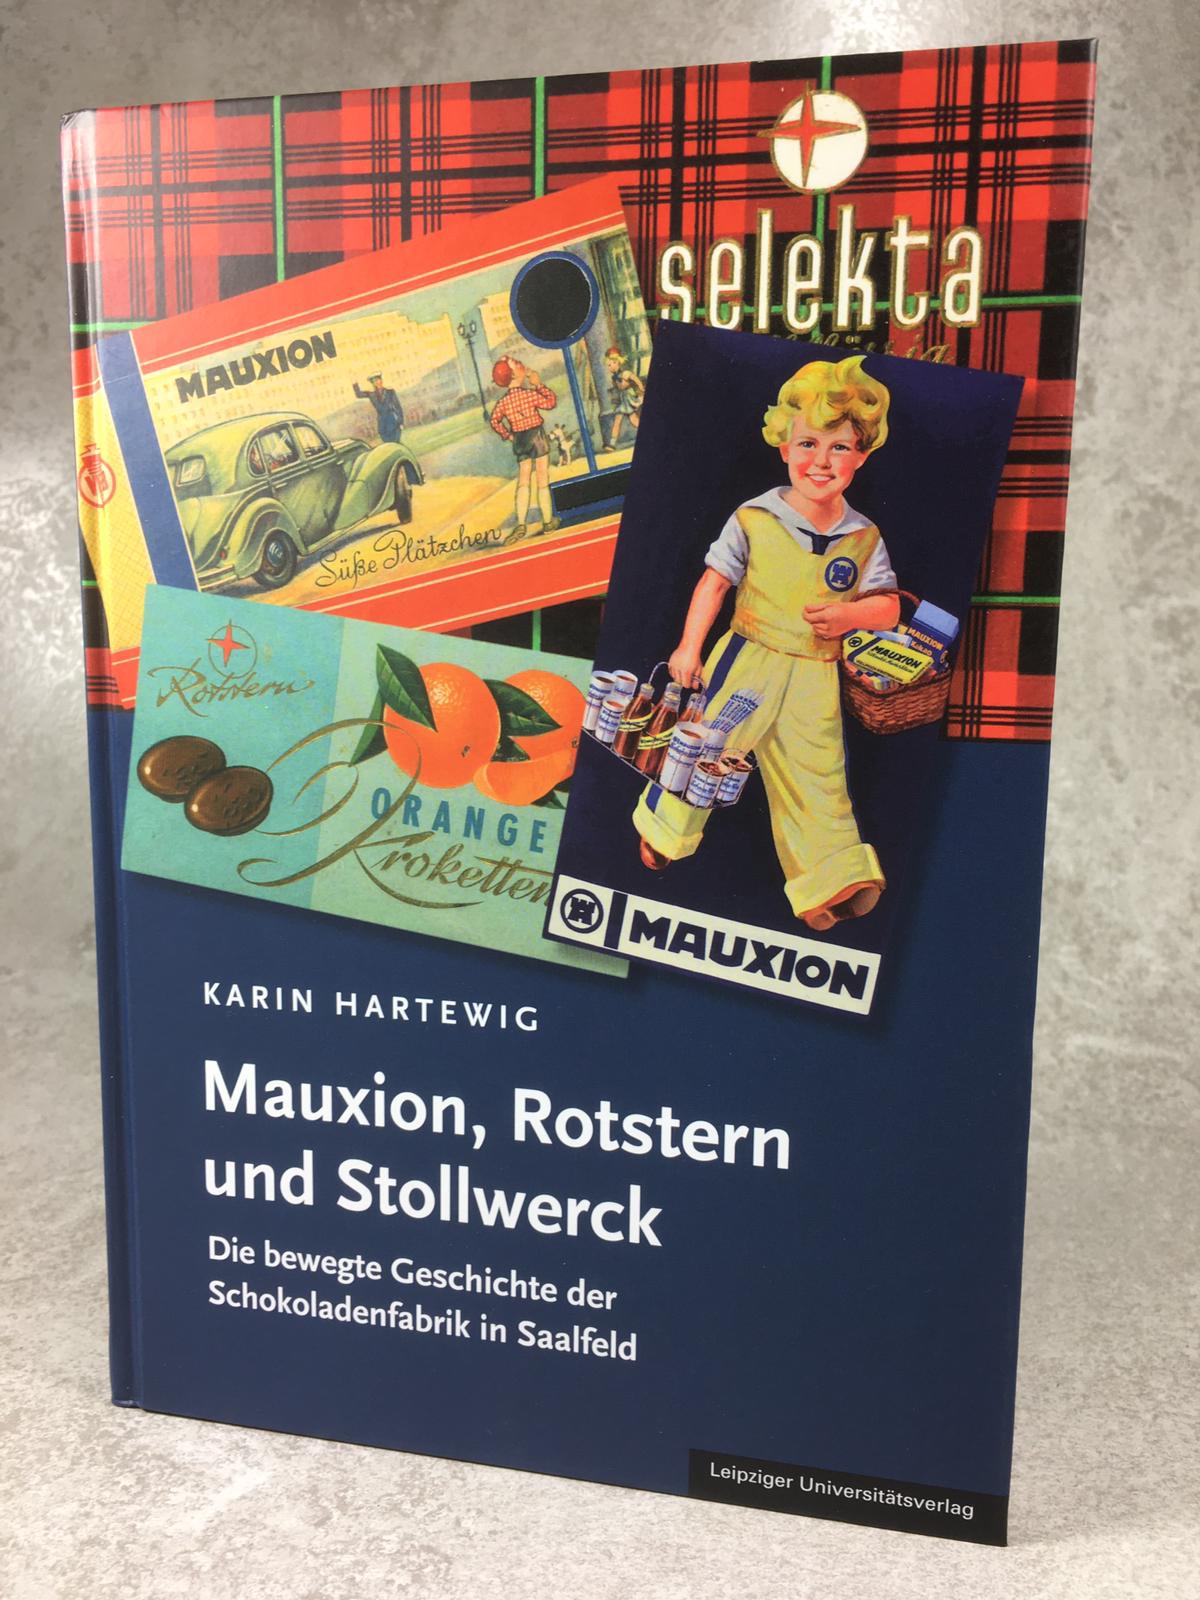 Buch "Mauxion, Rotstern und Stollwerck"